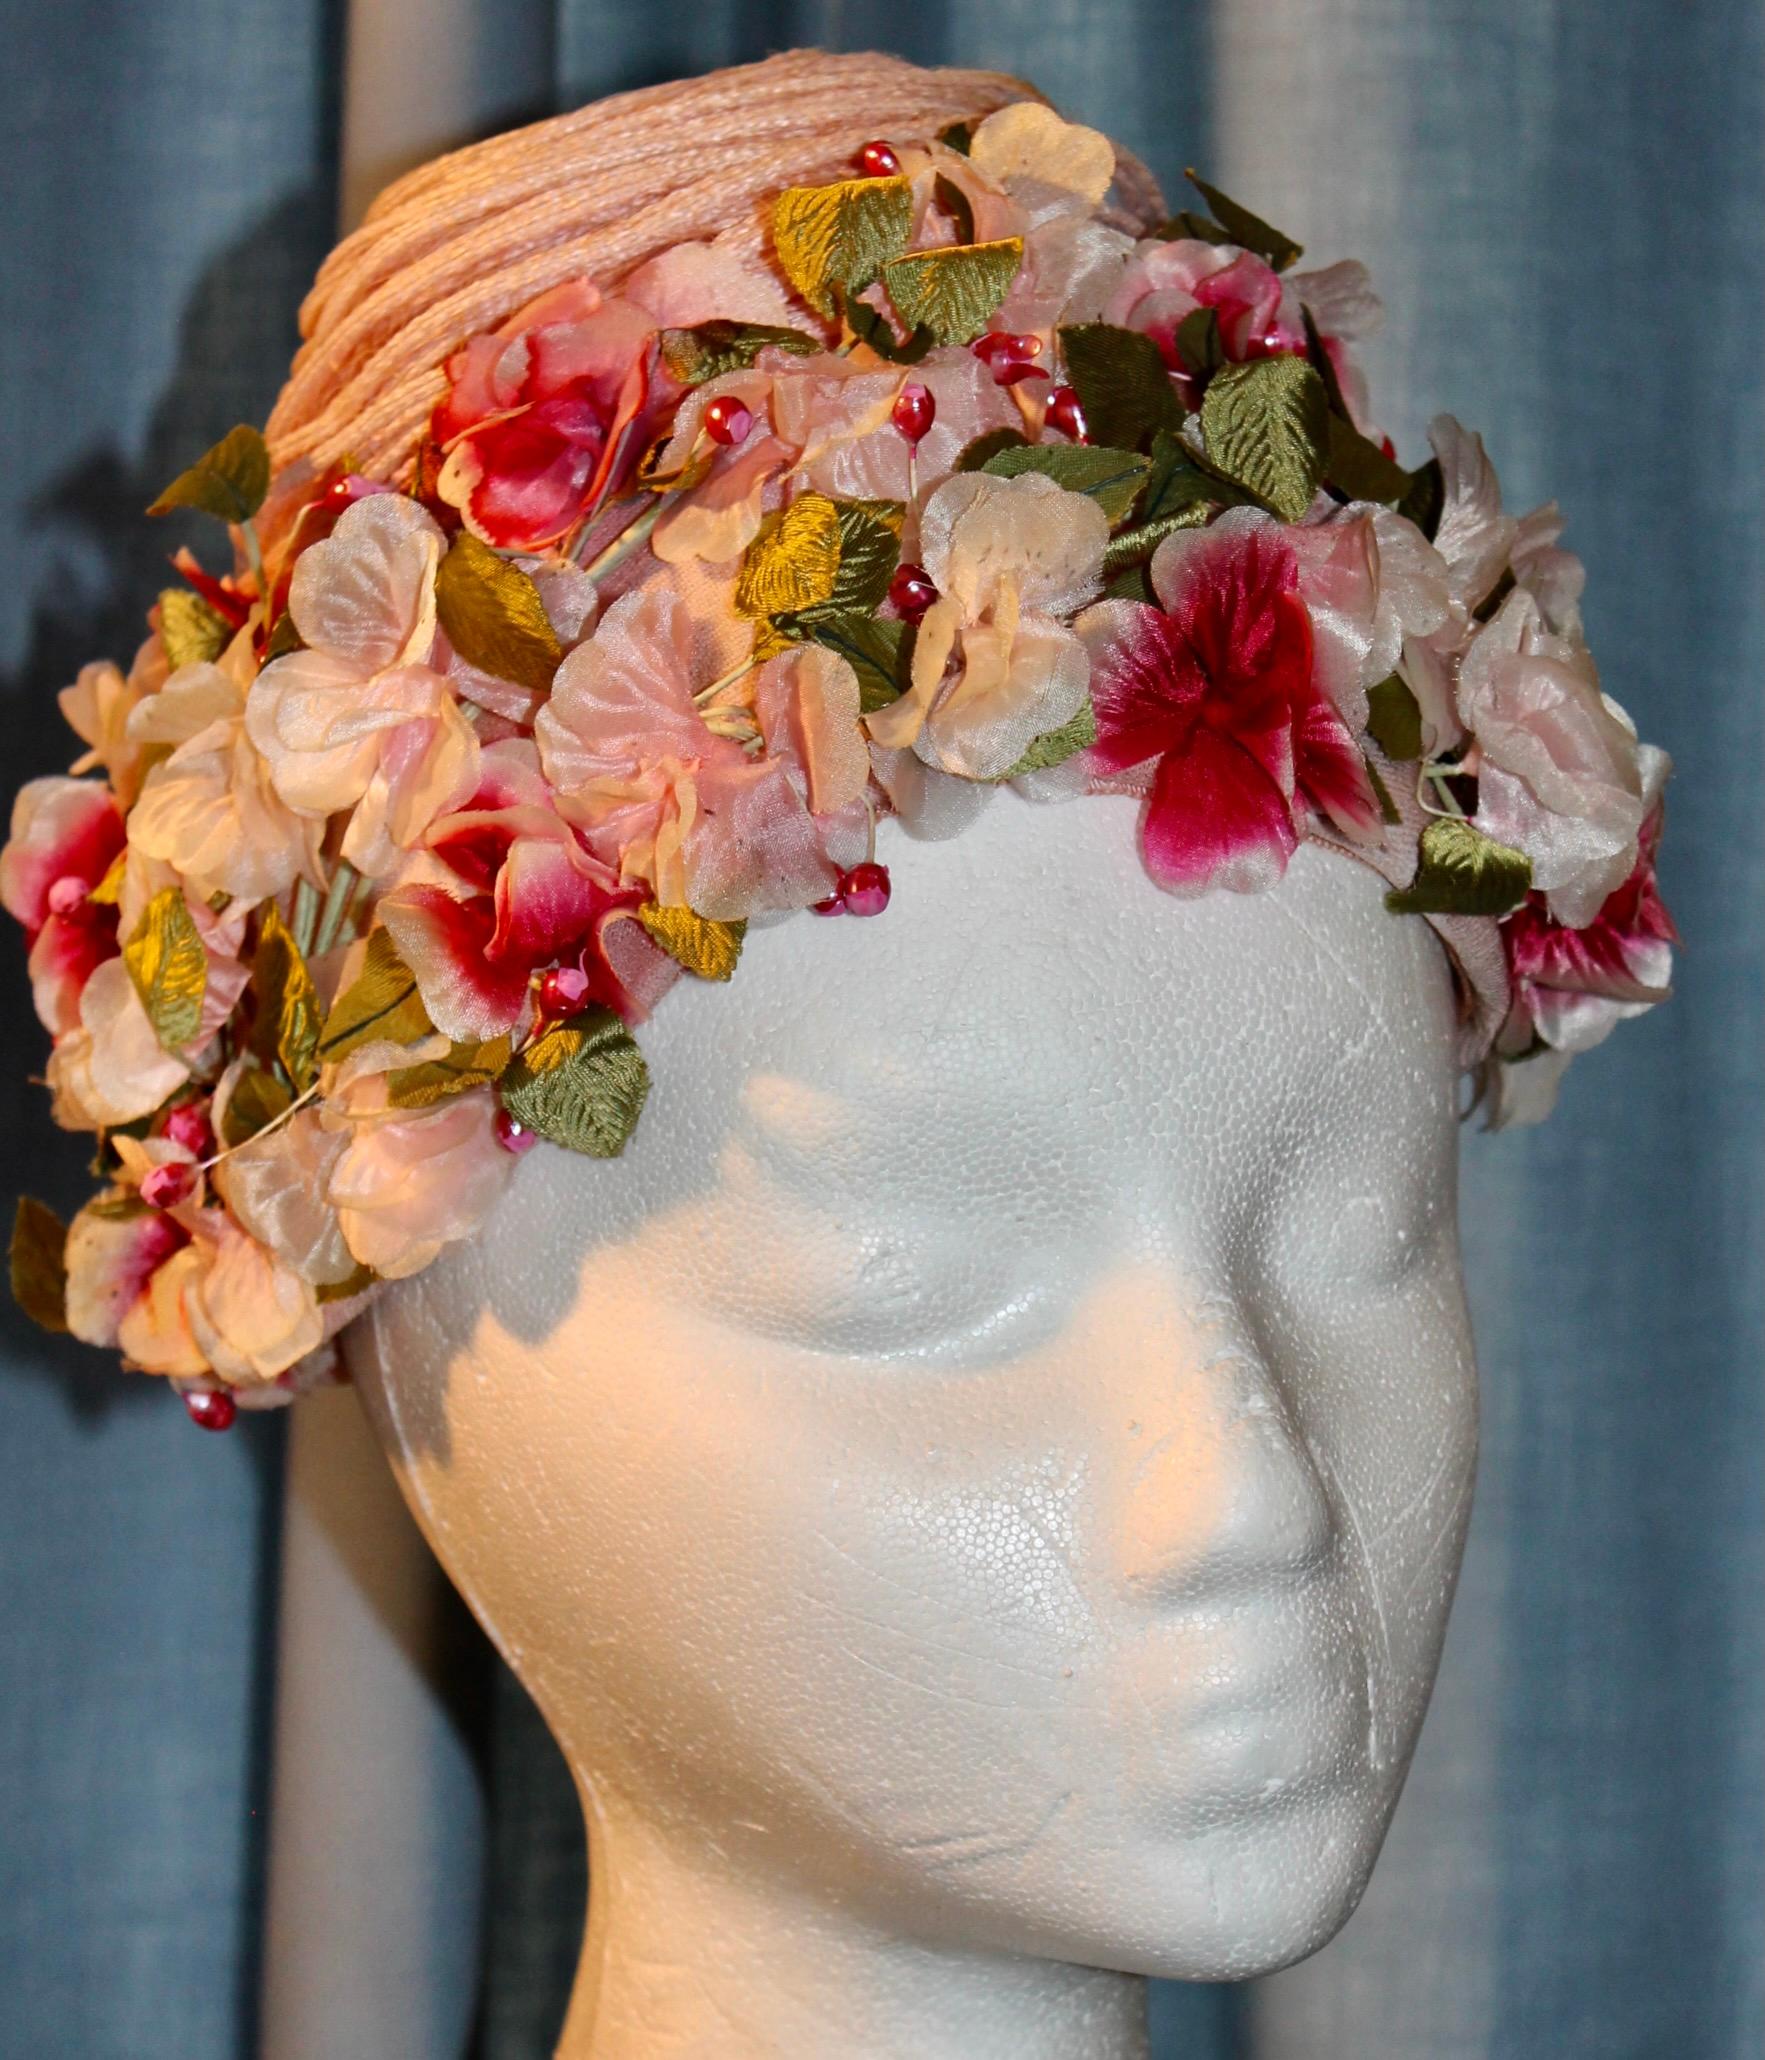 Chapeau de printemps d'Elsa Schiaparelli avec couronne de fleurs en soie pastel sur le pourtour.
Paille enveloppée, fleurs en soie, cousues à la main et attachées à un cadre en filet.
Surmonté d'une Corde rose tourbillonnante  Le turban mesure à